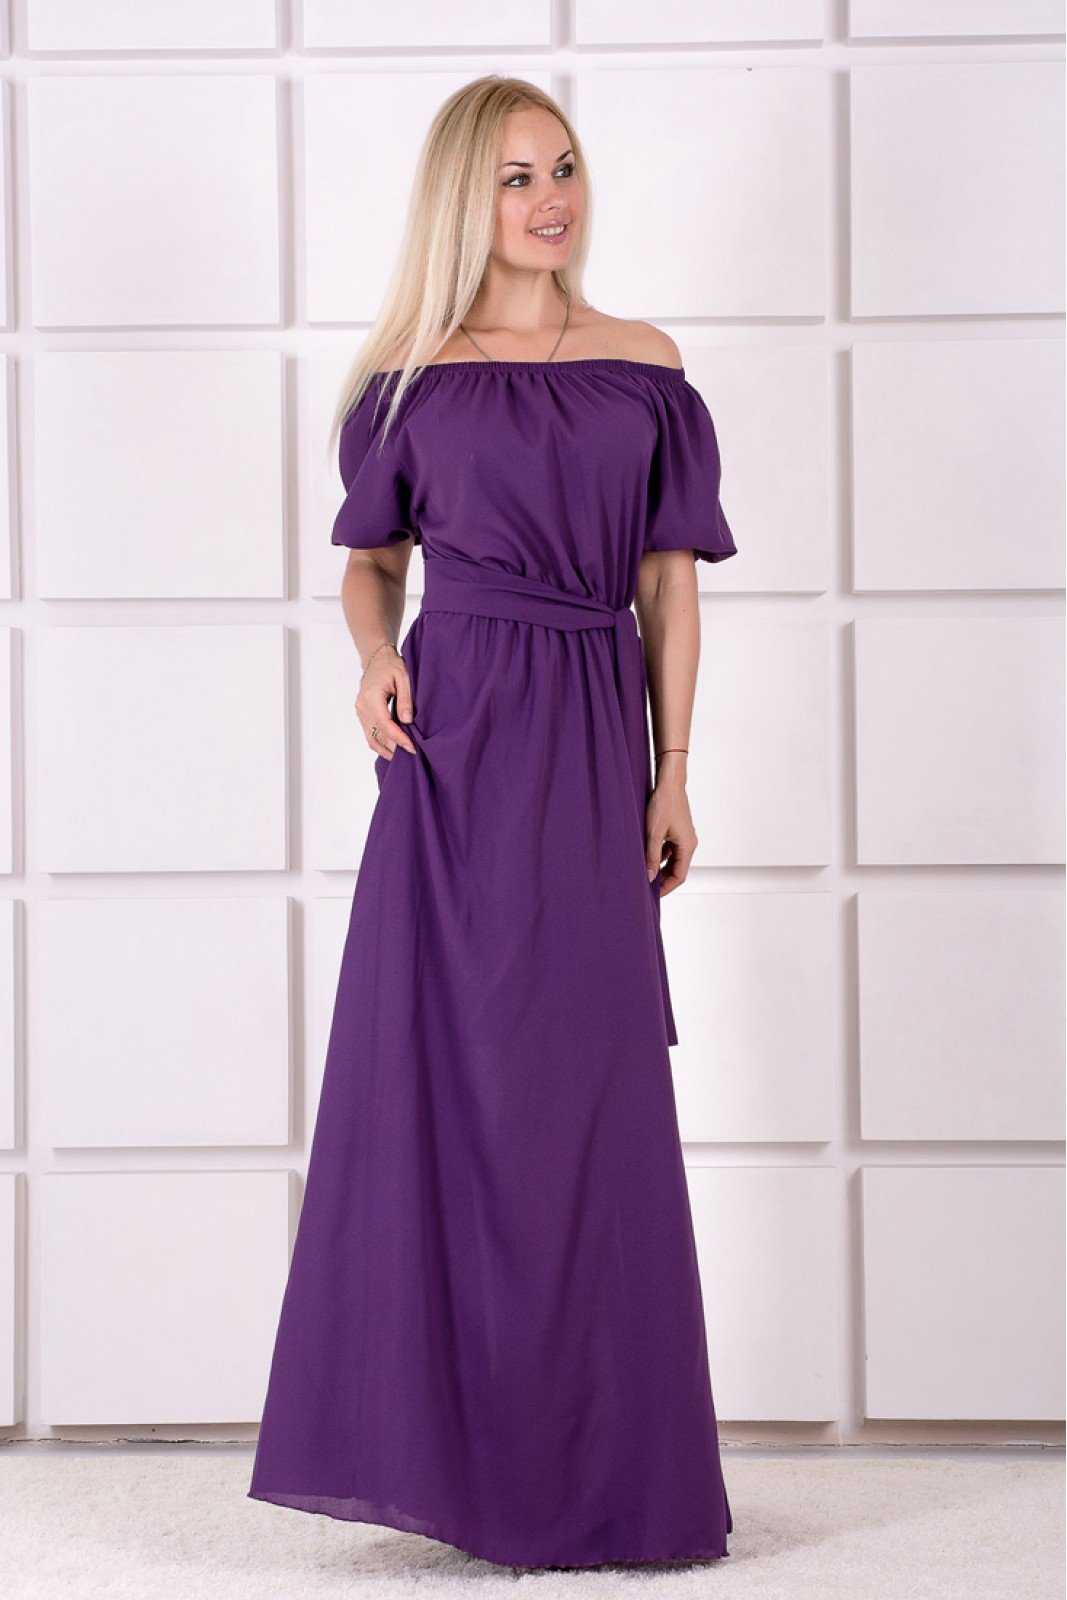 Фиолетовое платье, как подобрать по фигуре и с чем можно носитьпопулярные фасоны фиолетовых платьев, правила создания образа